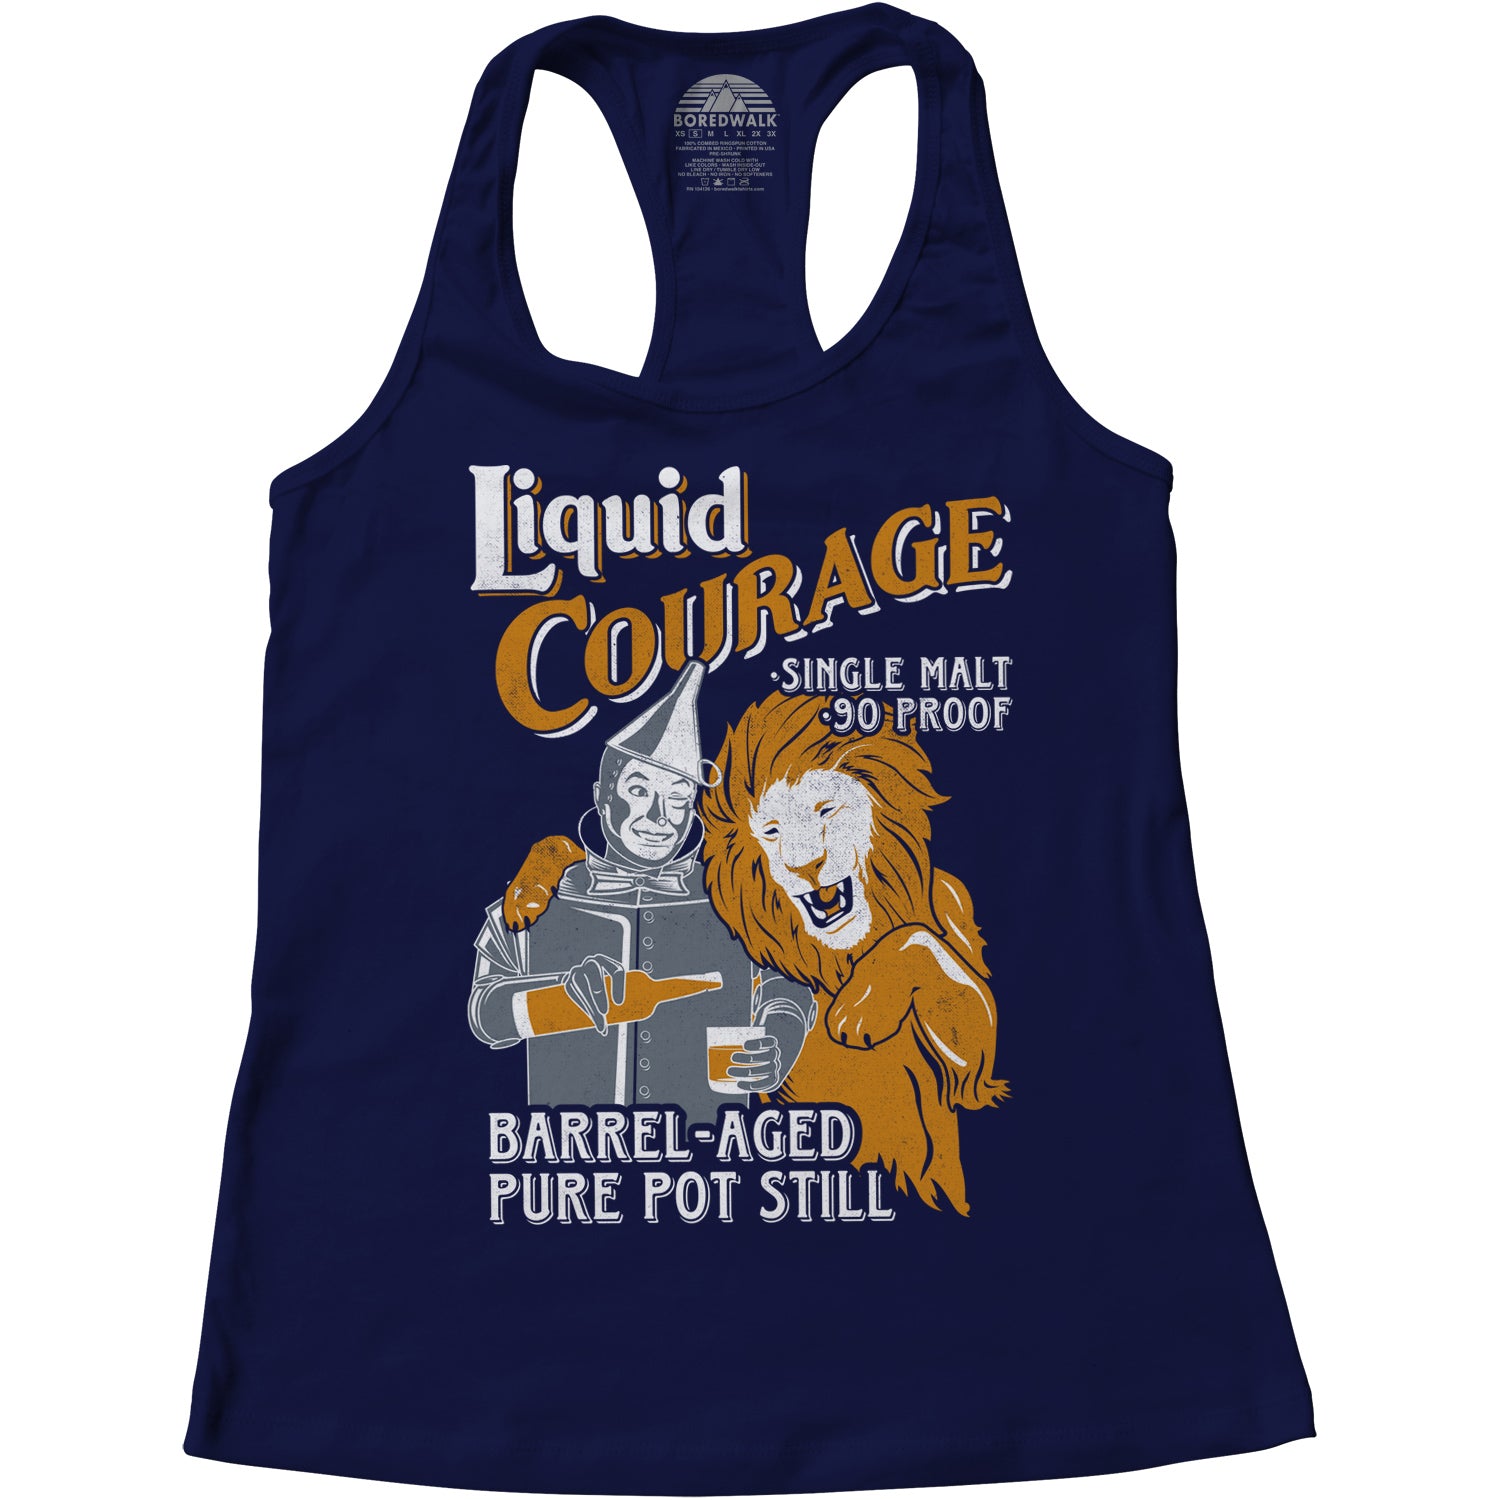 Women's Liquid Courage Racerback Tank Top